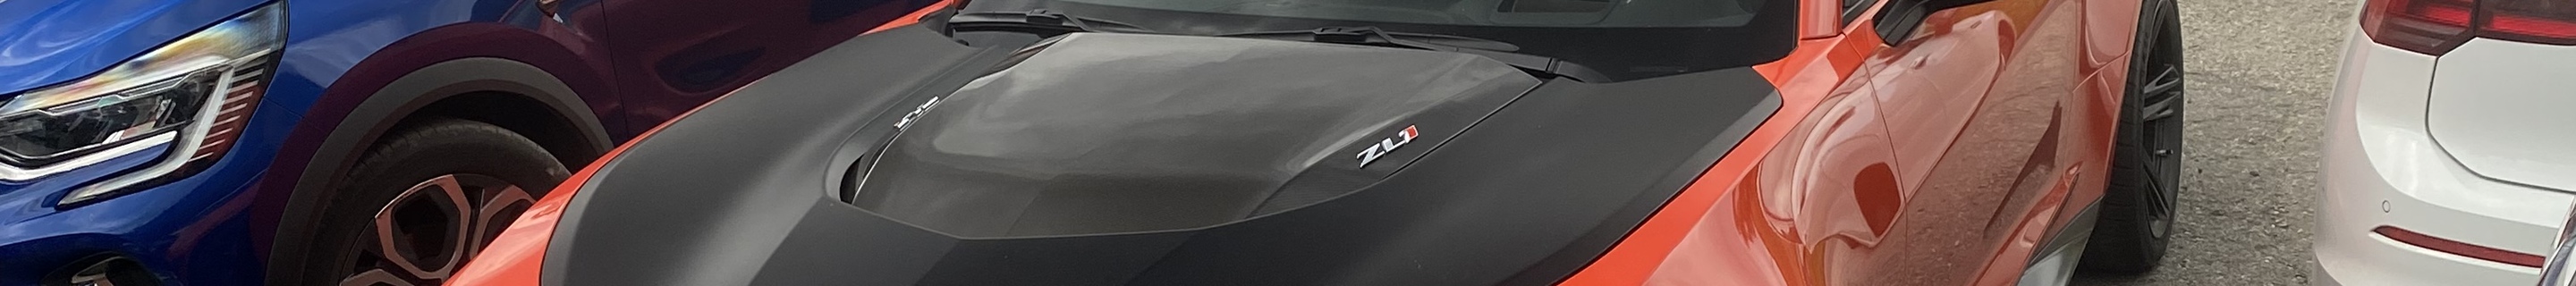 Chevrolet Camaro ZL1 1LE 2019